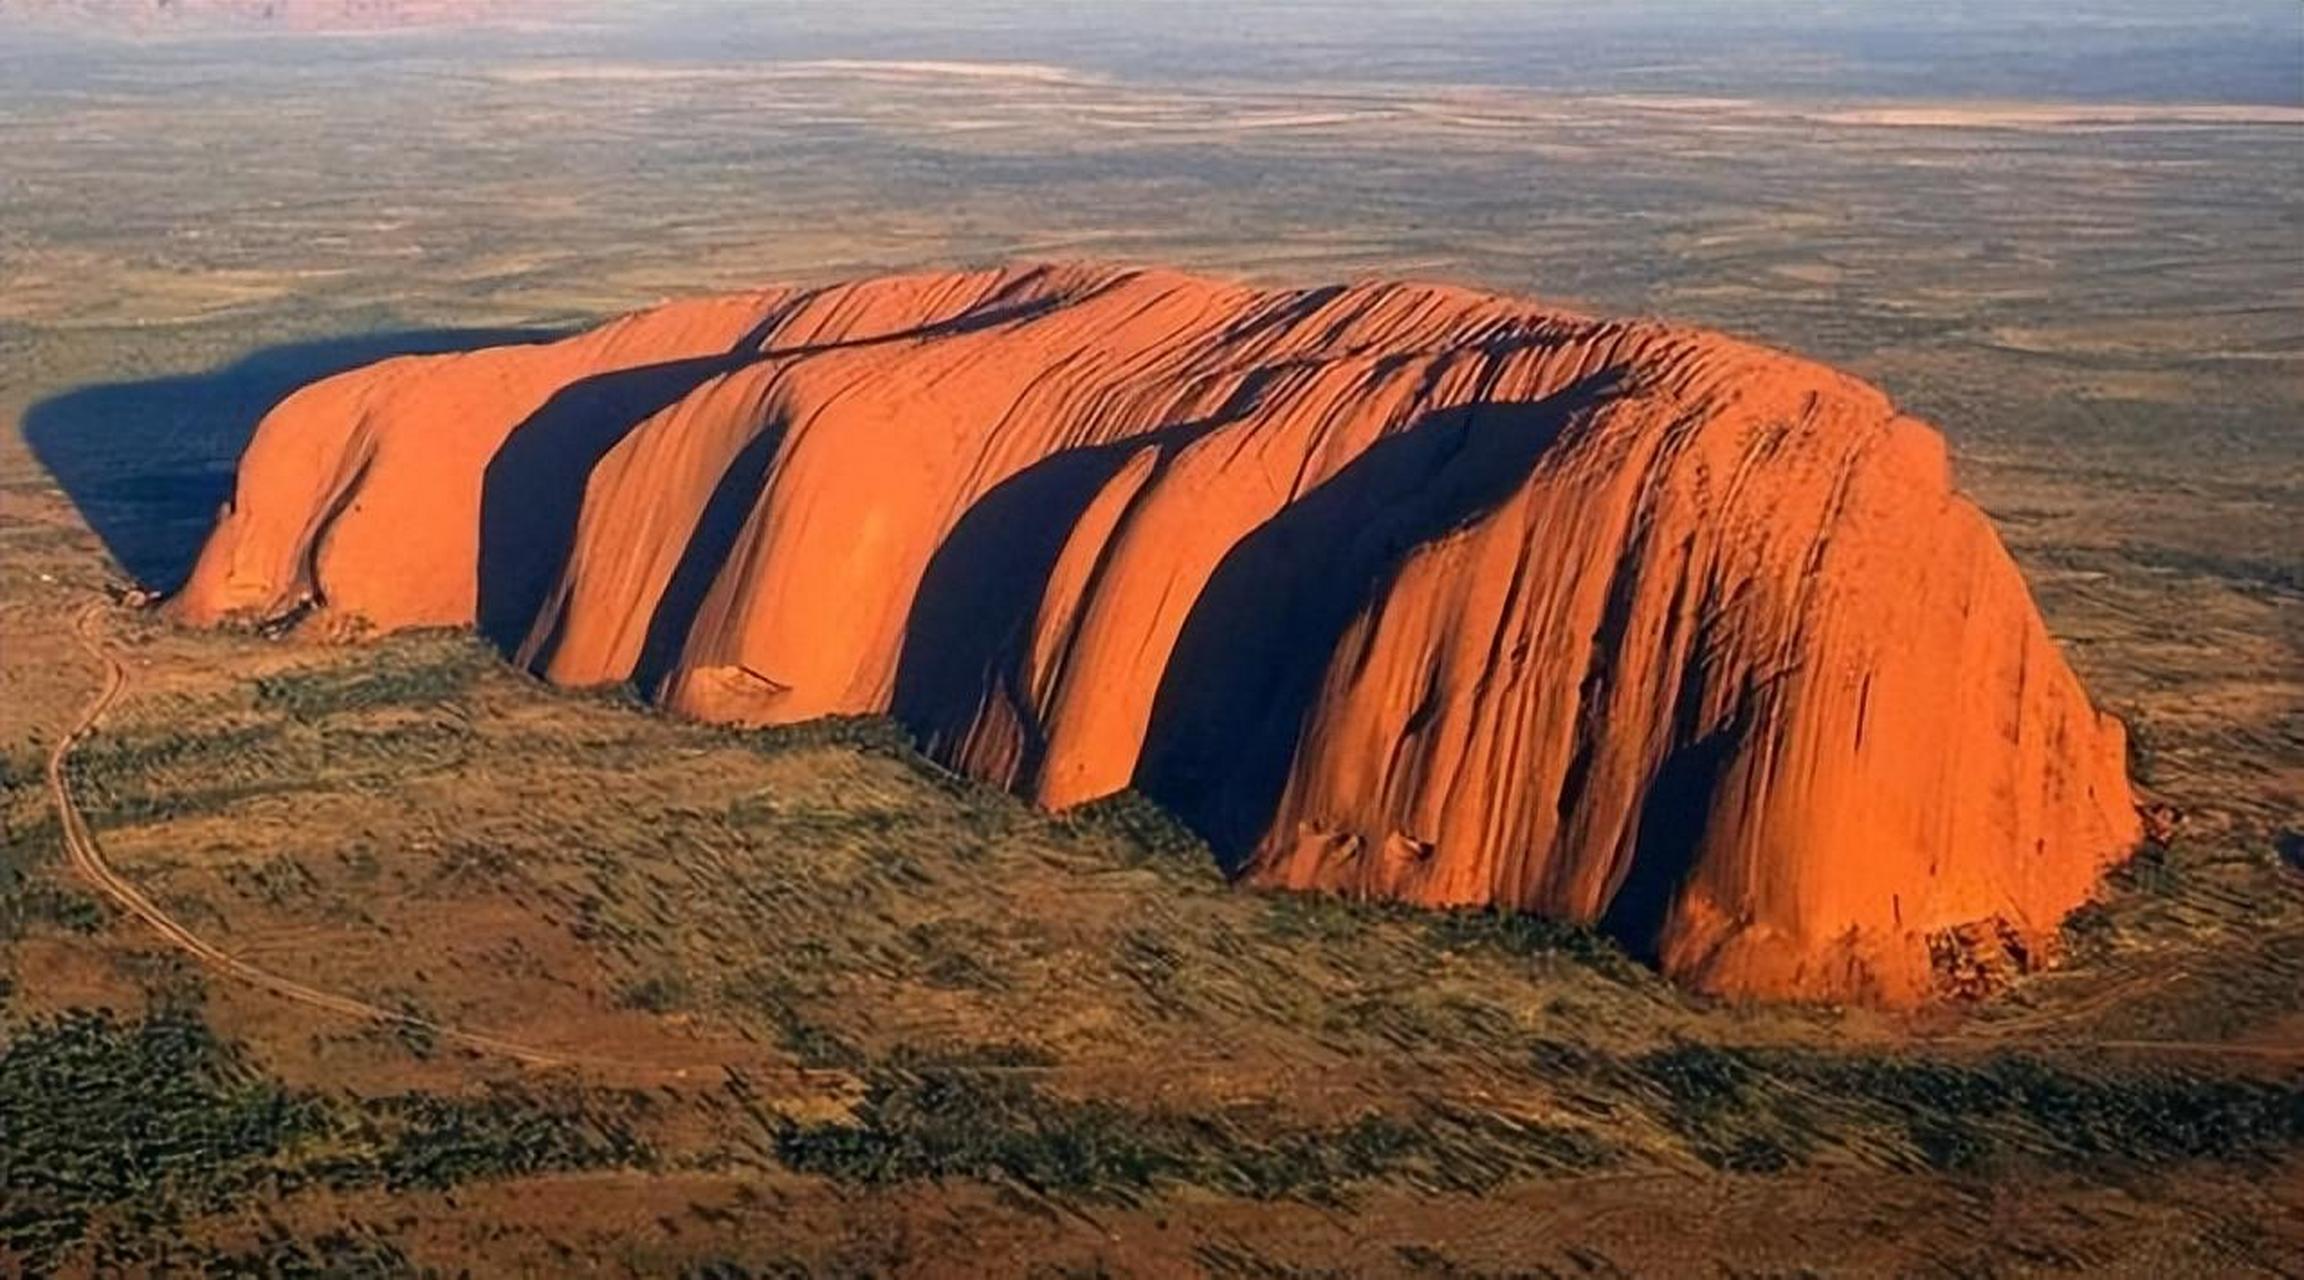 艾尔斯岩石是一块位于澳大利亚的神秘巨石,这块巨石长度约300米,周长